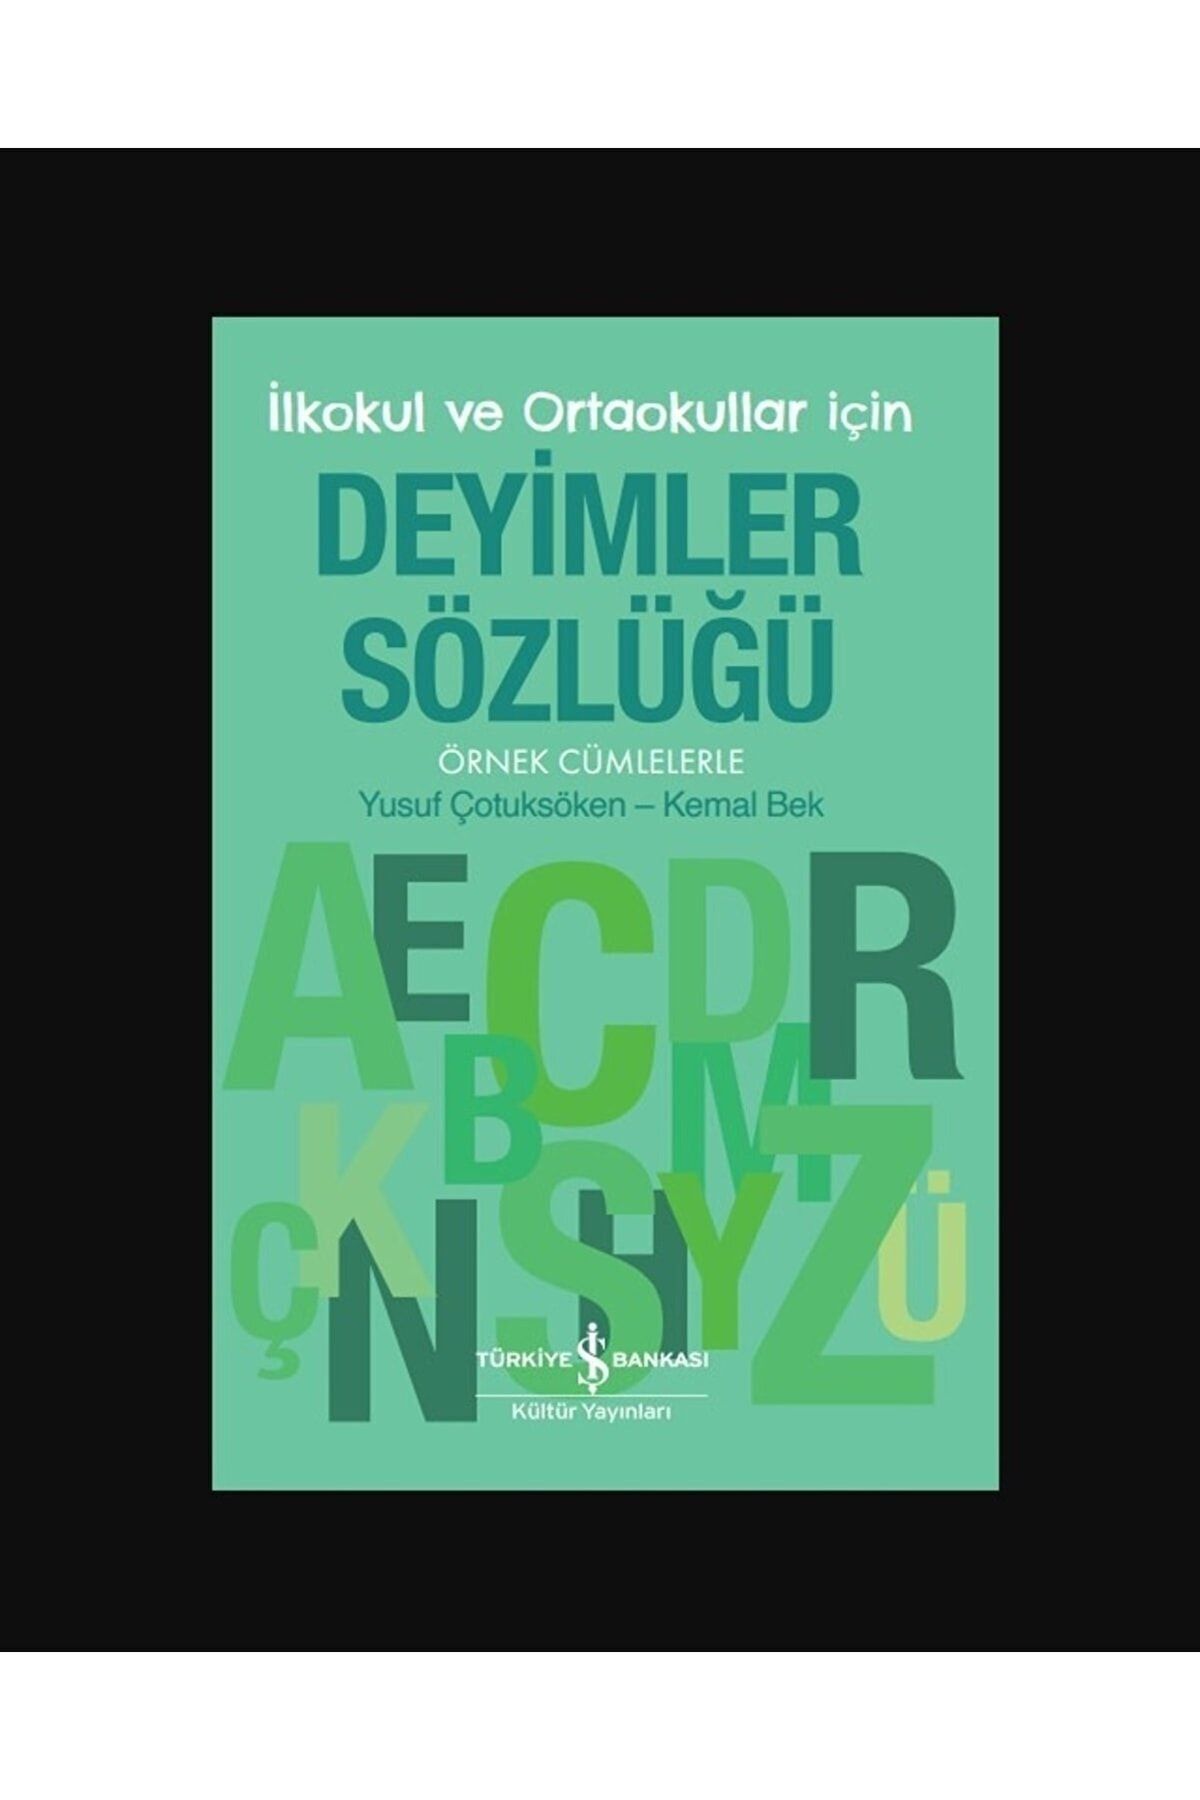 Türkiye İş Bankası Kültür Yayınları Deyimler Sözlüğü – Ilkokul Ve Ortaokullar Için – Örnek Cümlelerle